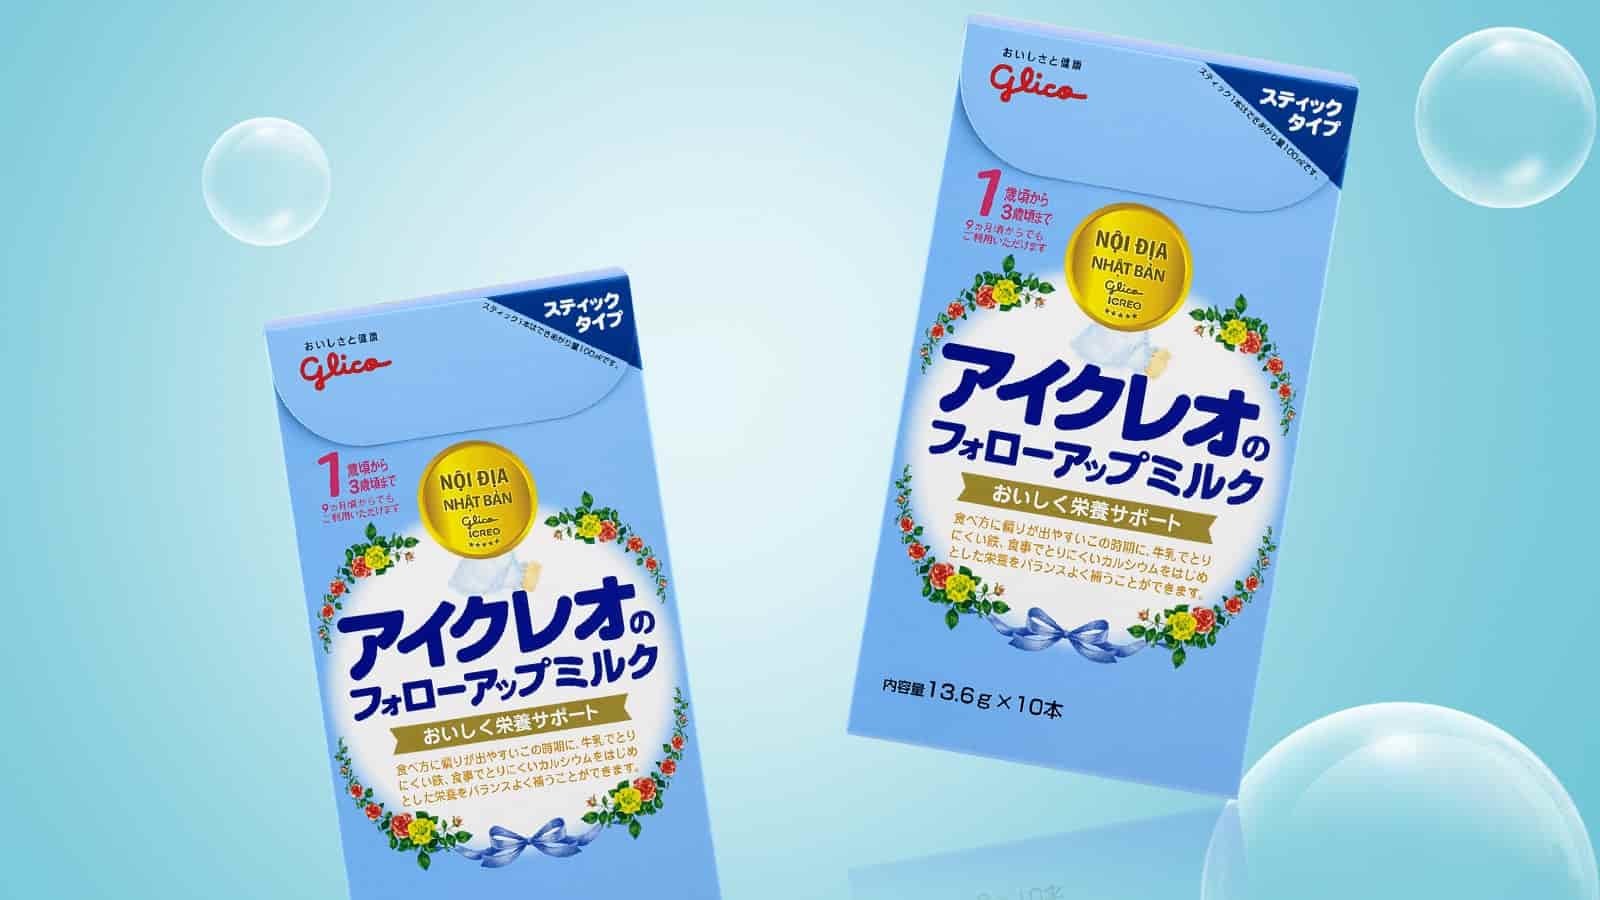 Sữa Glico Icreo số 1 Nhật Bản 10 gói (Cho bé 9 - 36 tháng)